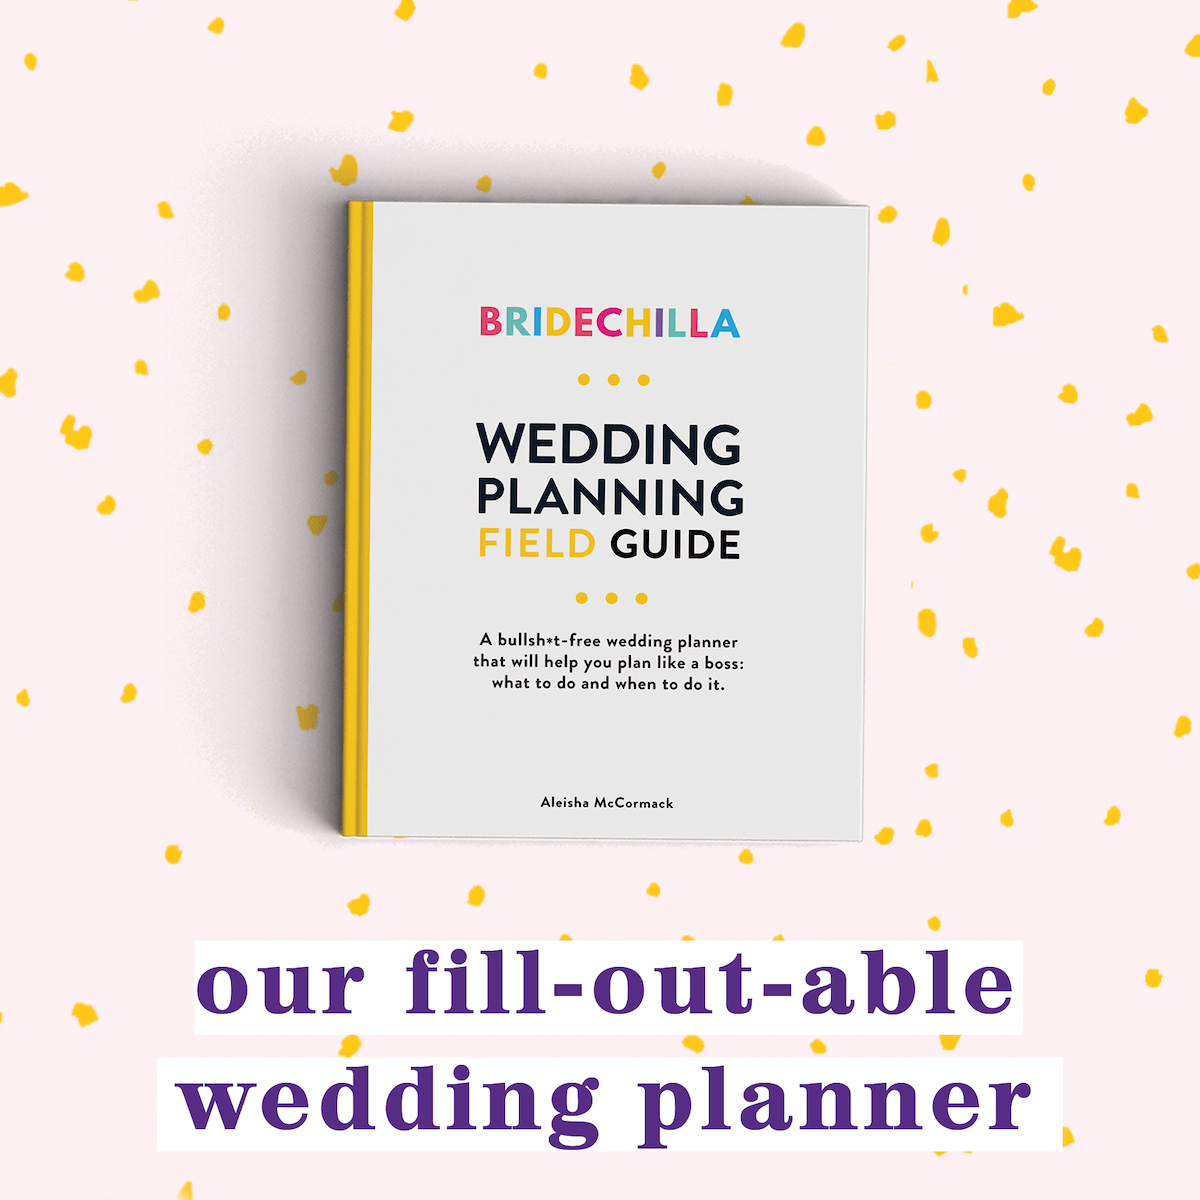 Bridechilla wedding planning field guide wedding planner